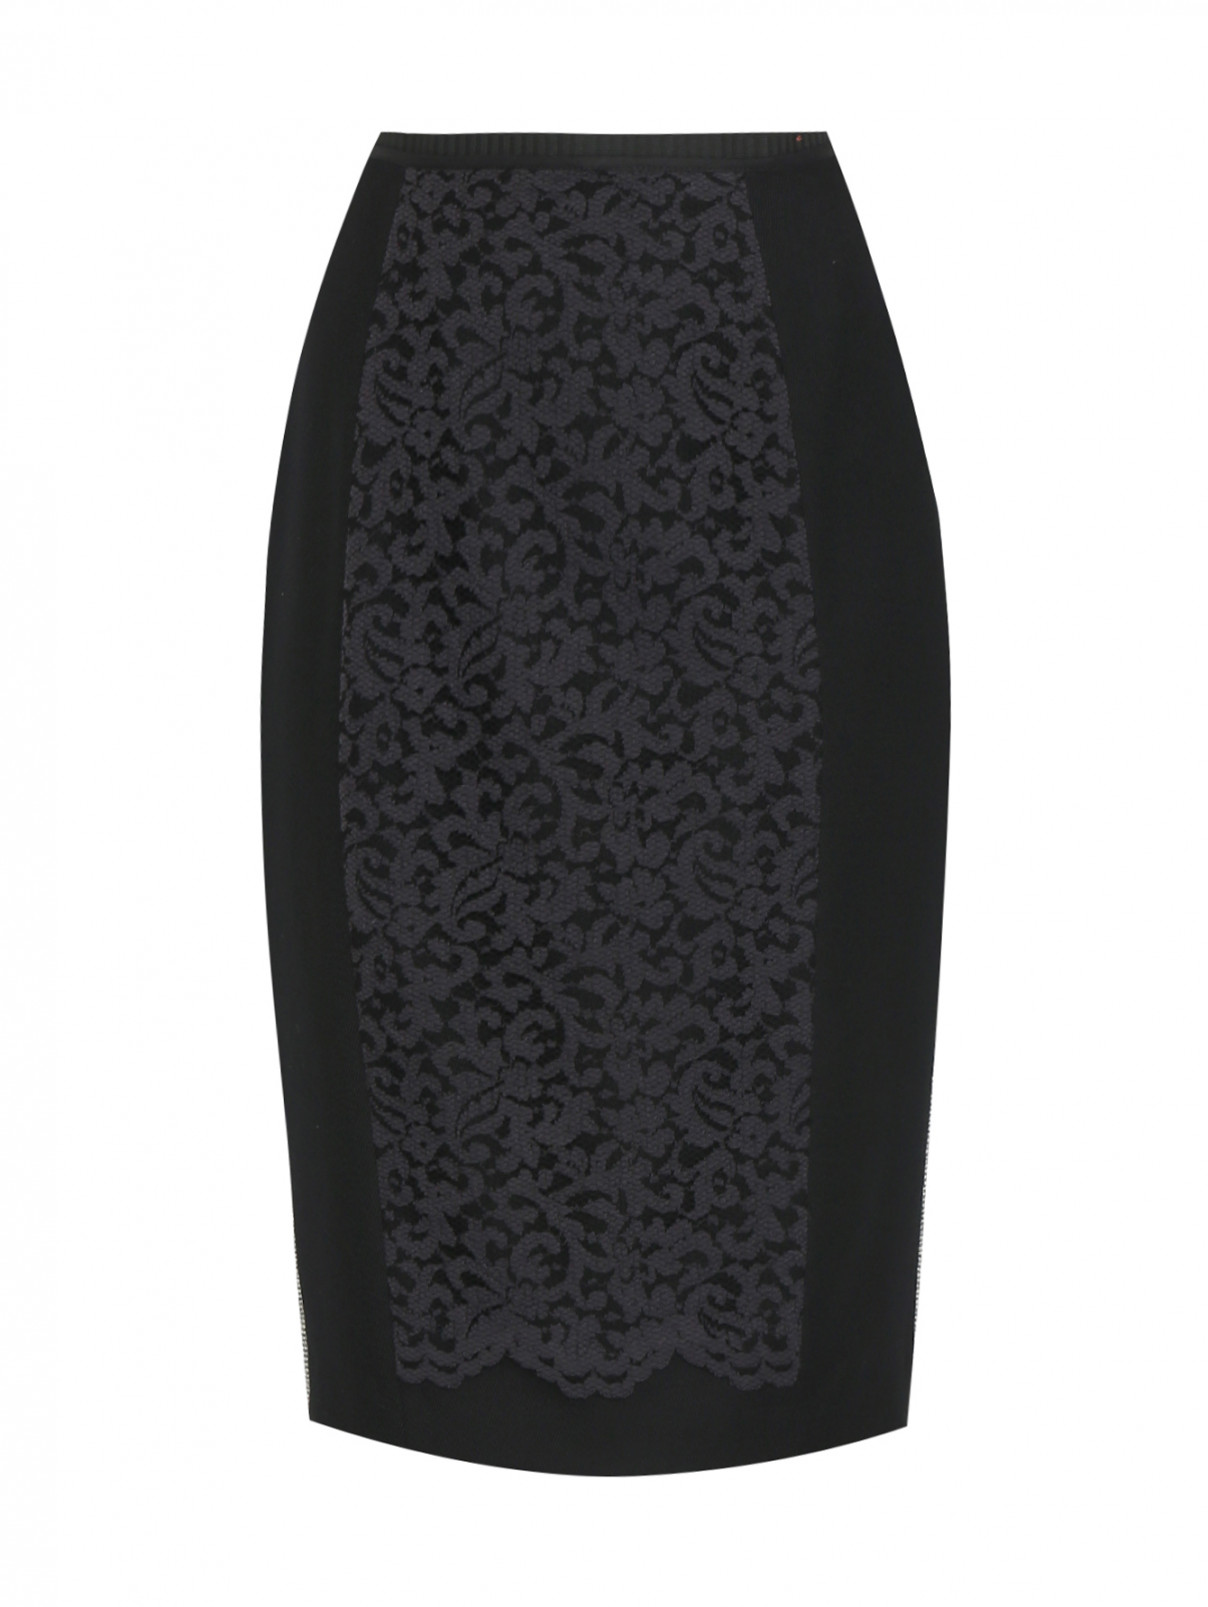 Юбка-карандаш из шерсти с кружевом Antonio Marras  –  Общий вид  – Цвет:  Черный